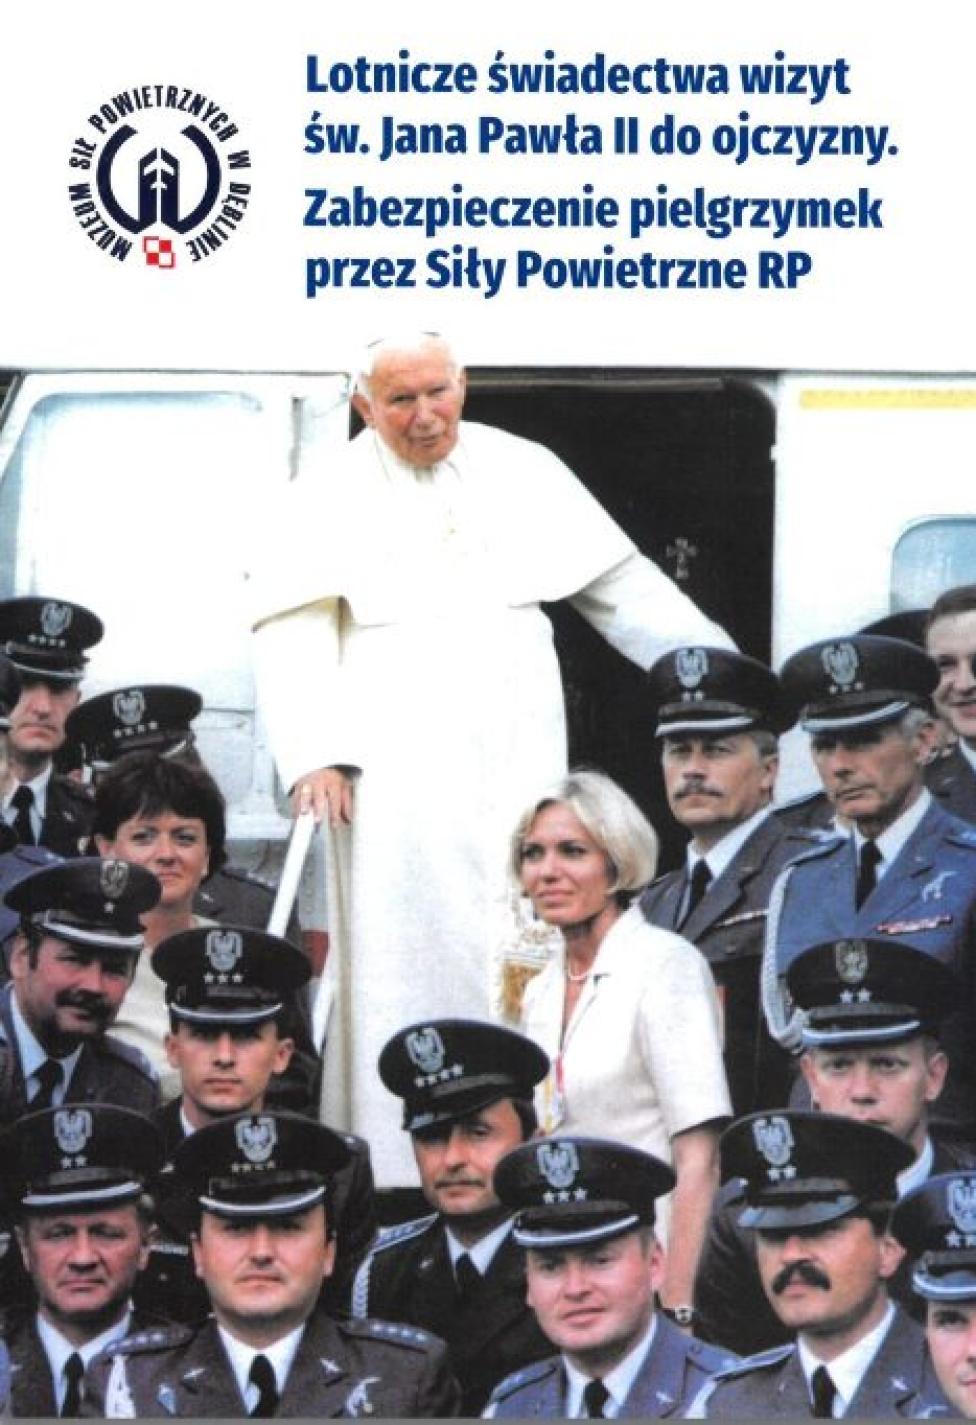 Książka "Lotnicze świadectwa wizyt św. Jana Pawła II do Ojczyzny" (fot. muzeumsp.pl)